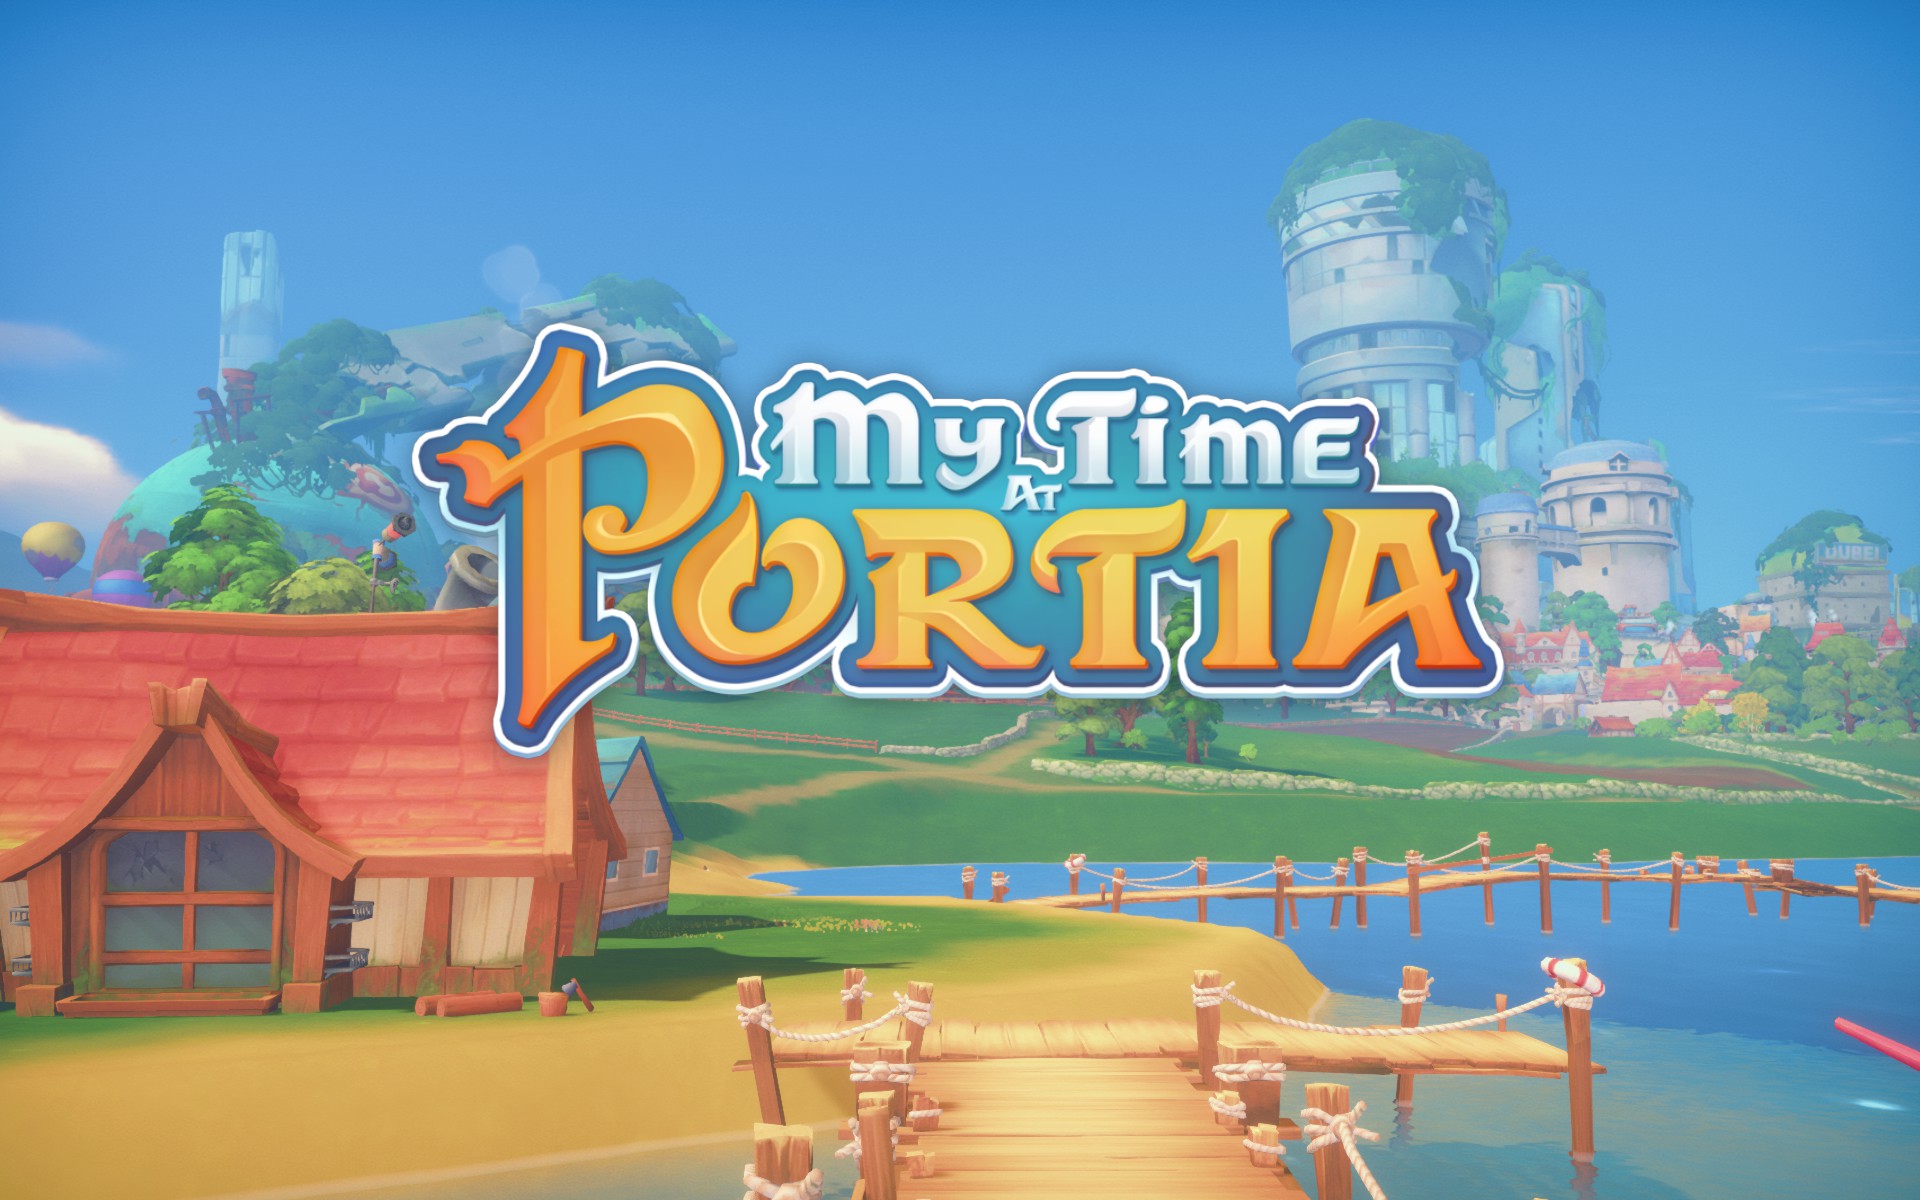 Mine time. My time at Portia. My time at Portia лого. My time at Portia обложка. Логотип игры my time at Portia.